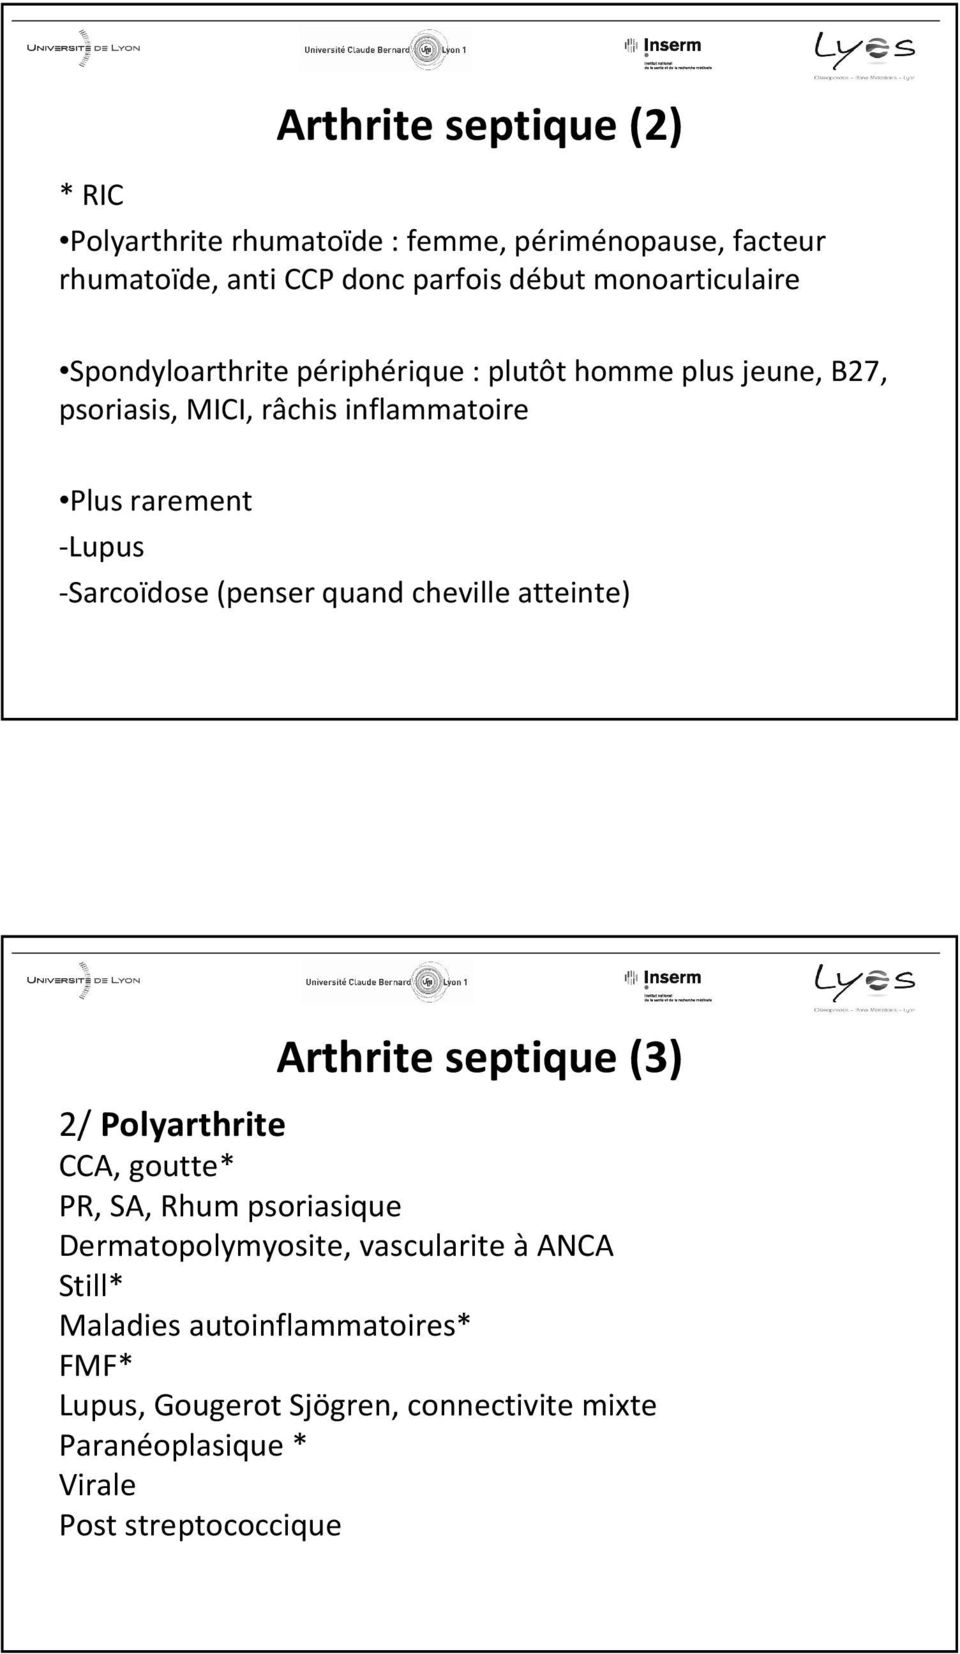 -Sarcoïdose (penser quand cheville atteinte) Arthrite septique (3) 2/ Polyarthrite CCA, goutte* PR, SA, Rhum psoriasique